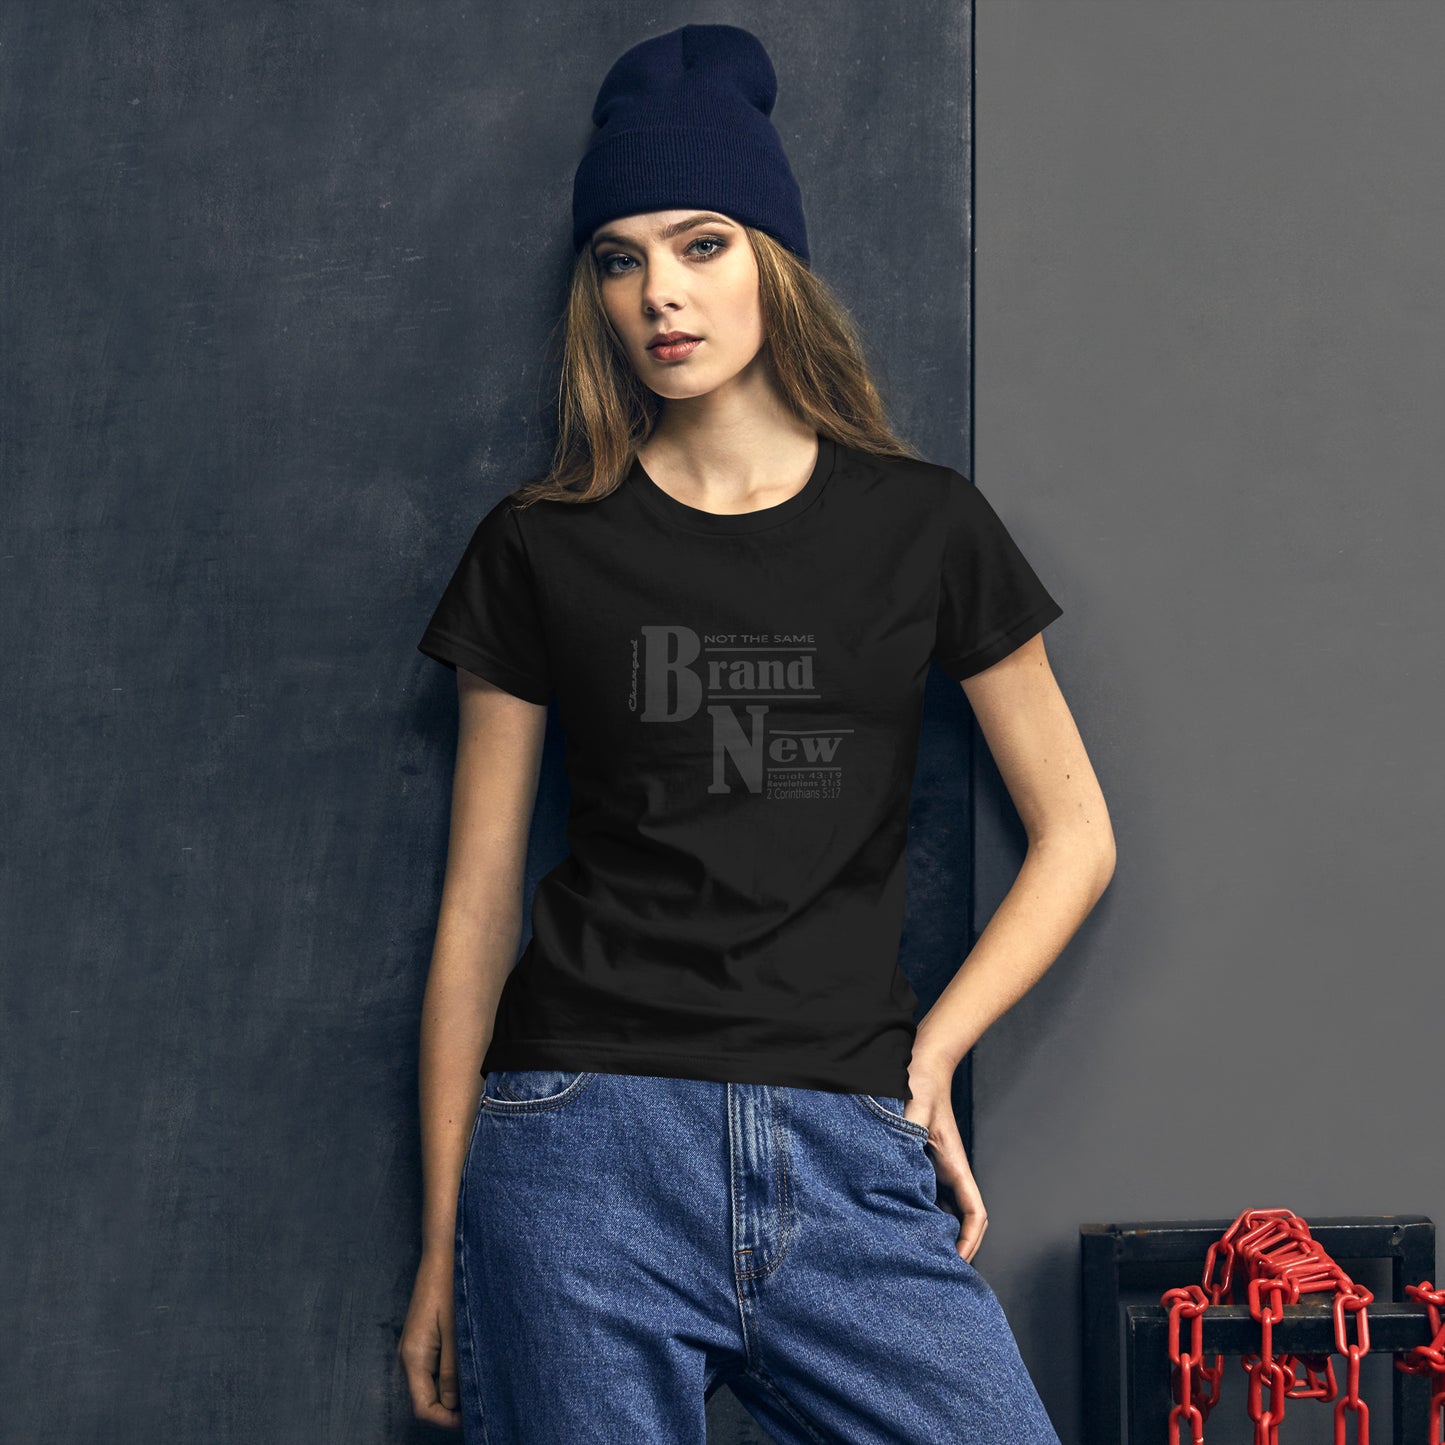 Brand New Women's short sleeve t-shirt